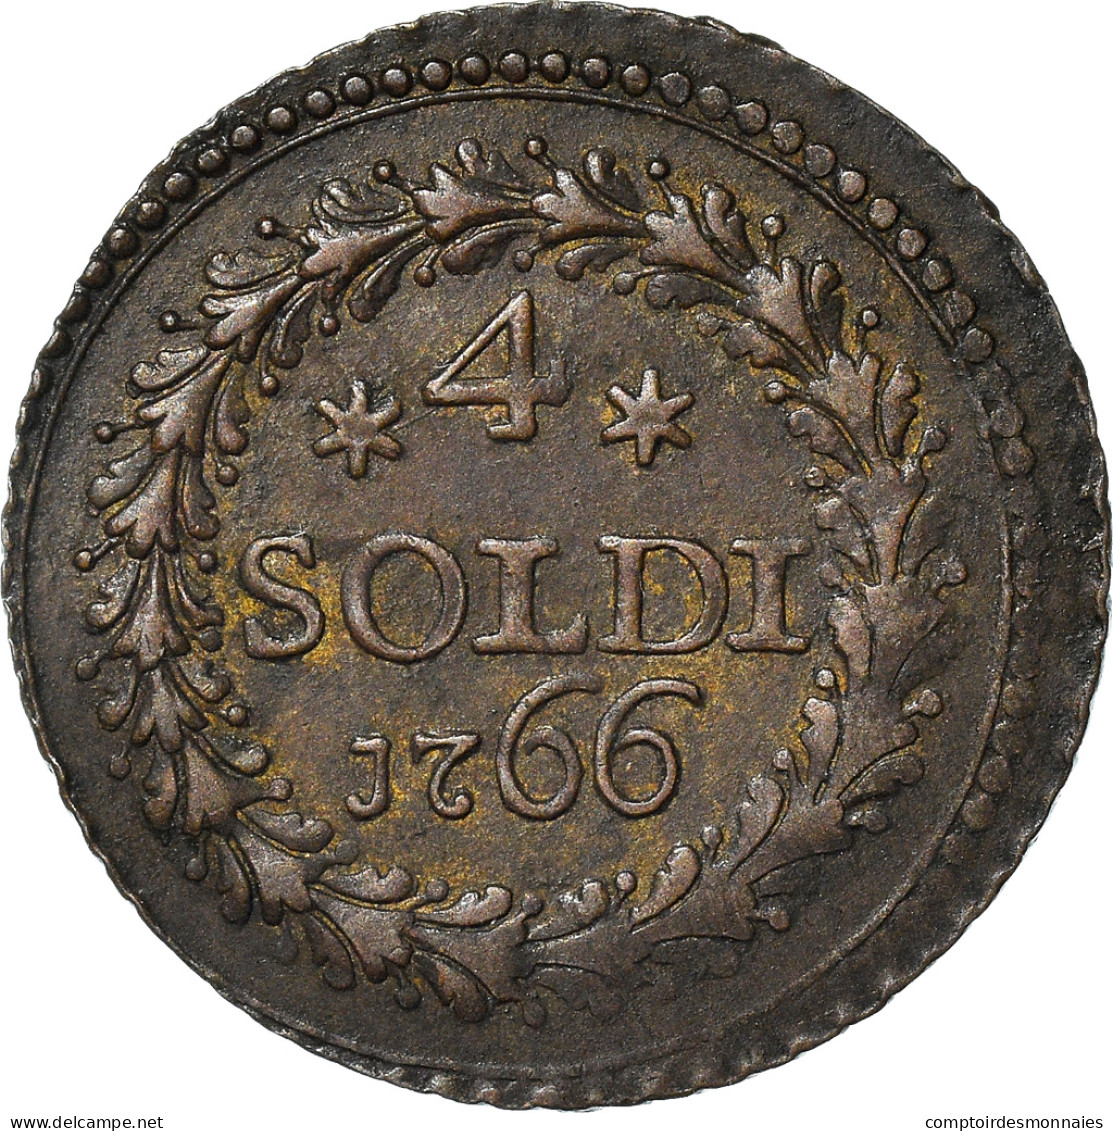 Monnaie, États Italiens, CORSICA, General Pasquale Paoli, 4 Soldi, 1766 - Corsica (1736-1768)